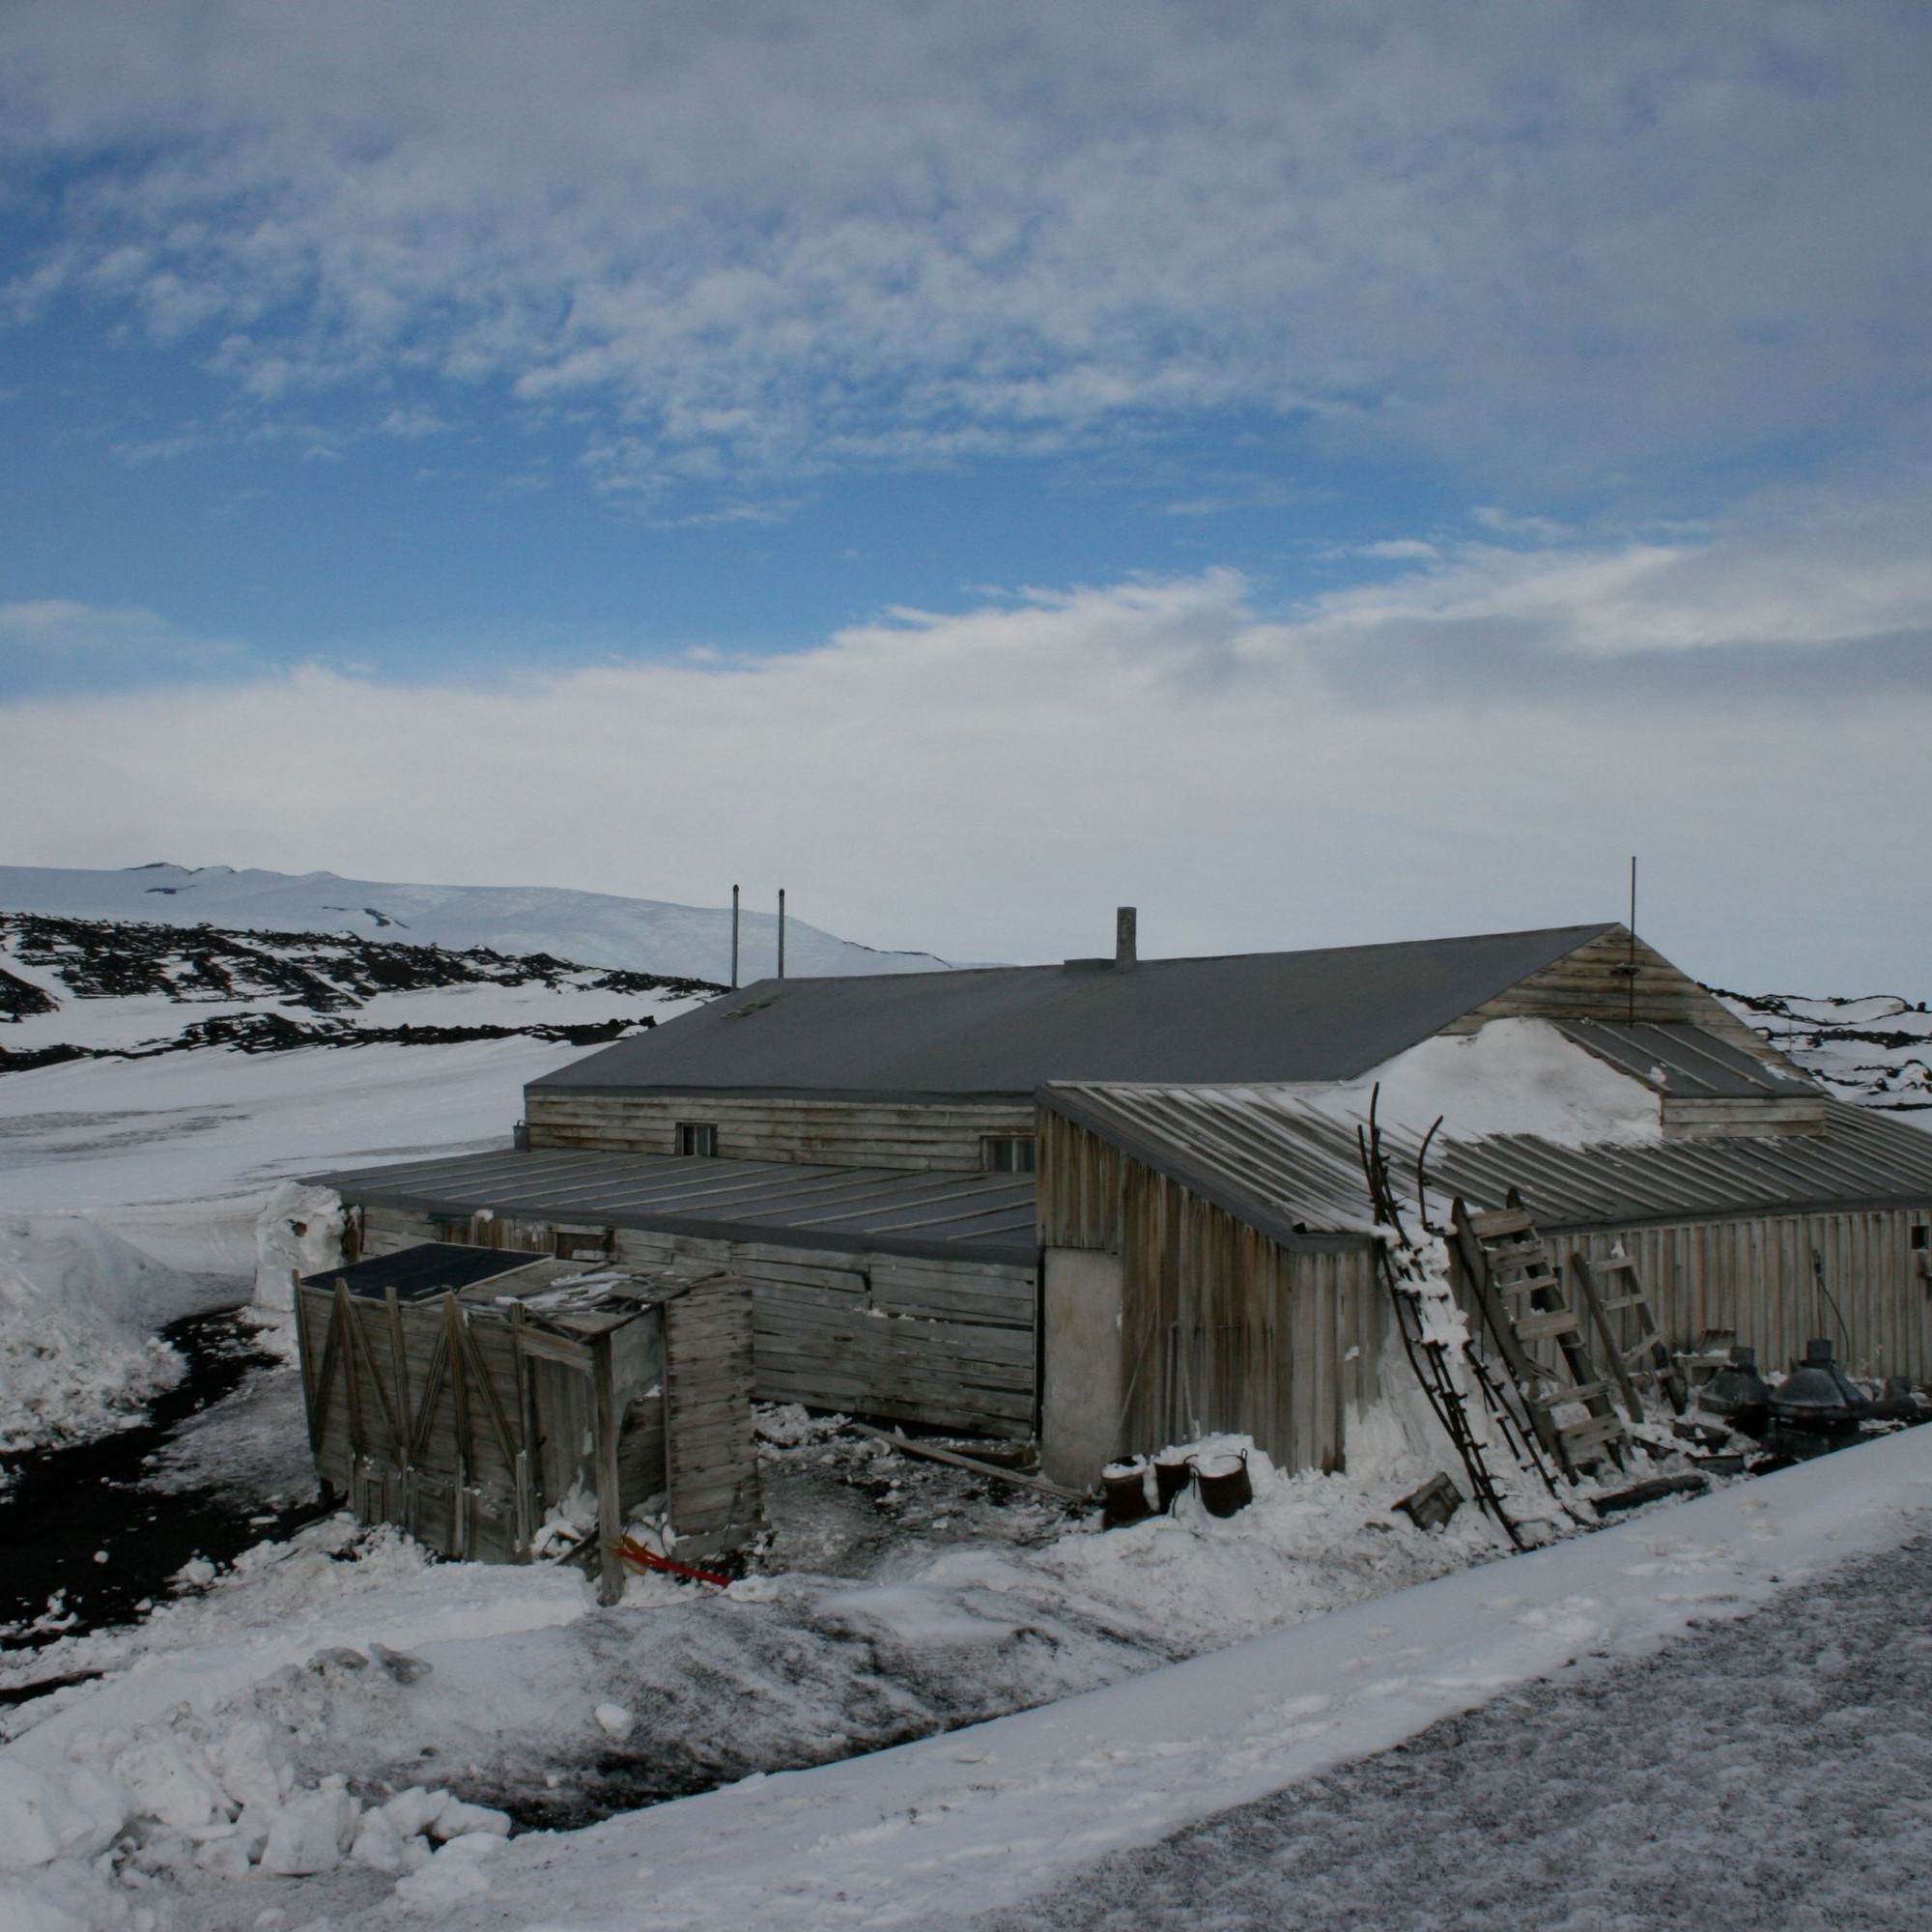 DIe Hütte des britischen Polarforschers Robert F. Scott. (Aussenaufnahme)